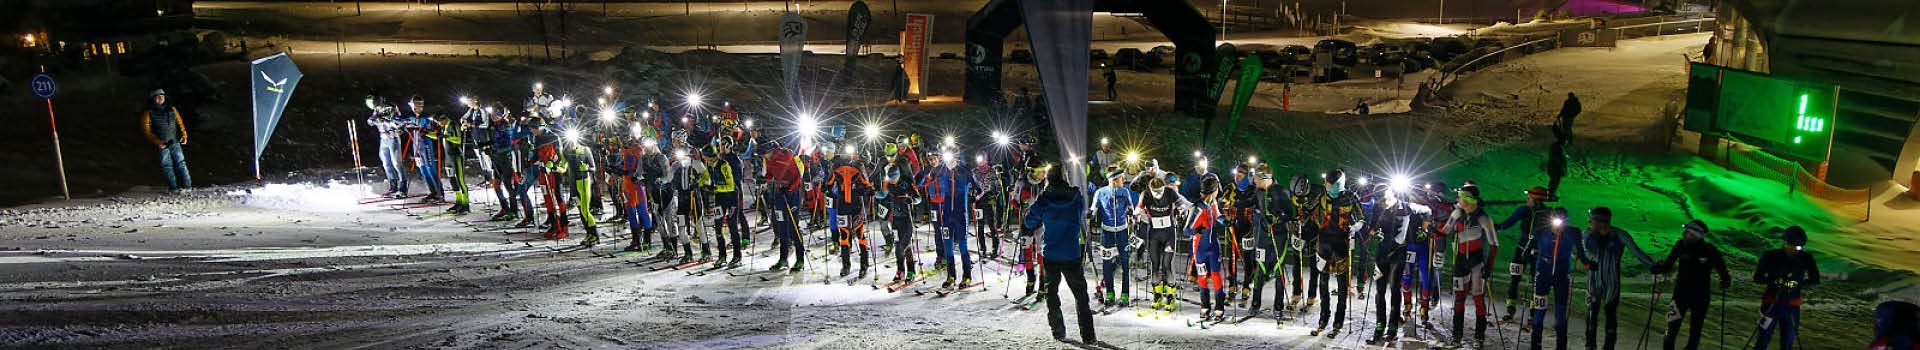 8. Asitz Skitour Race